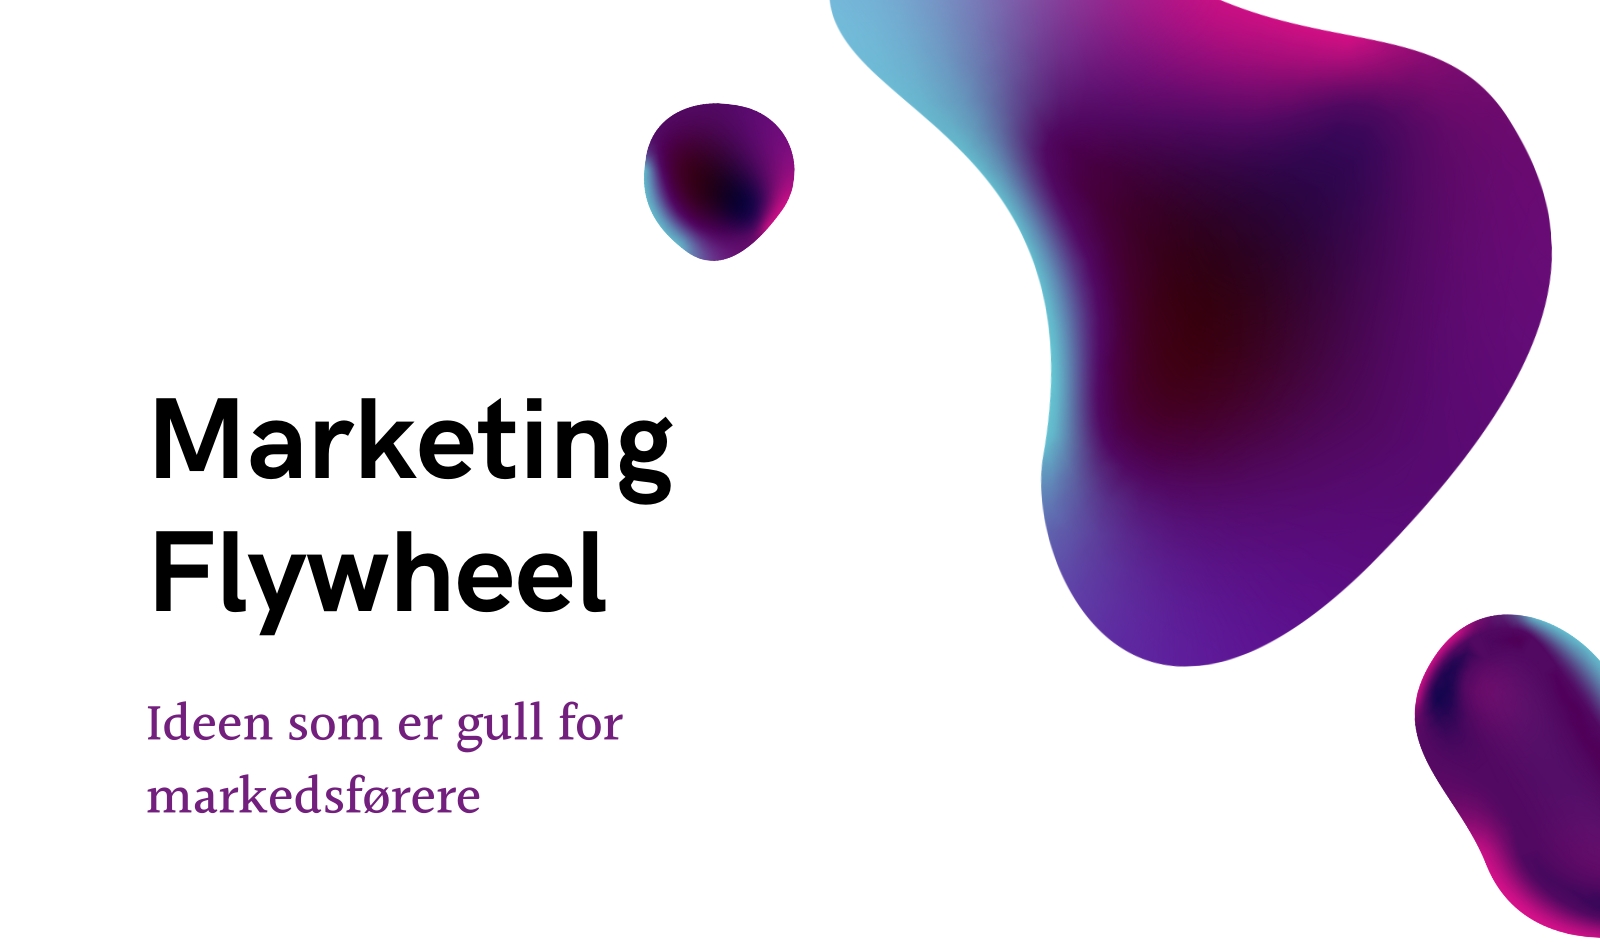 Marketing Flywheel er nøkkelen til suksess i markedsføring